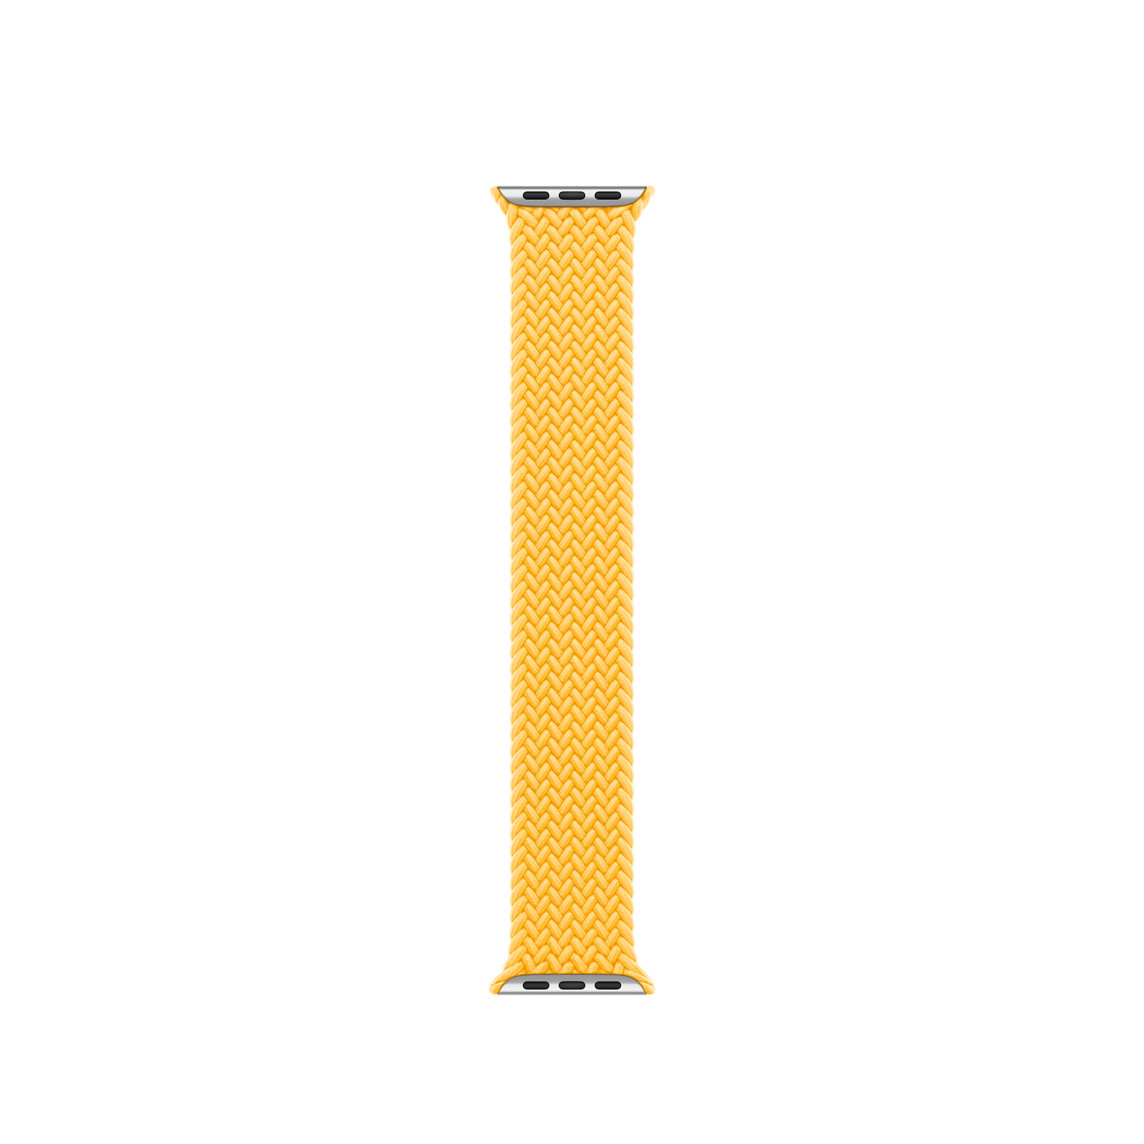 Correa uniloop trenzada amarillo solar, hecha de poliéster tejido e hilos de silicona sin hebillas ni cierres